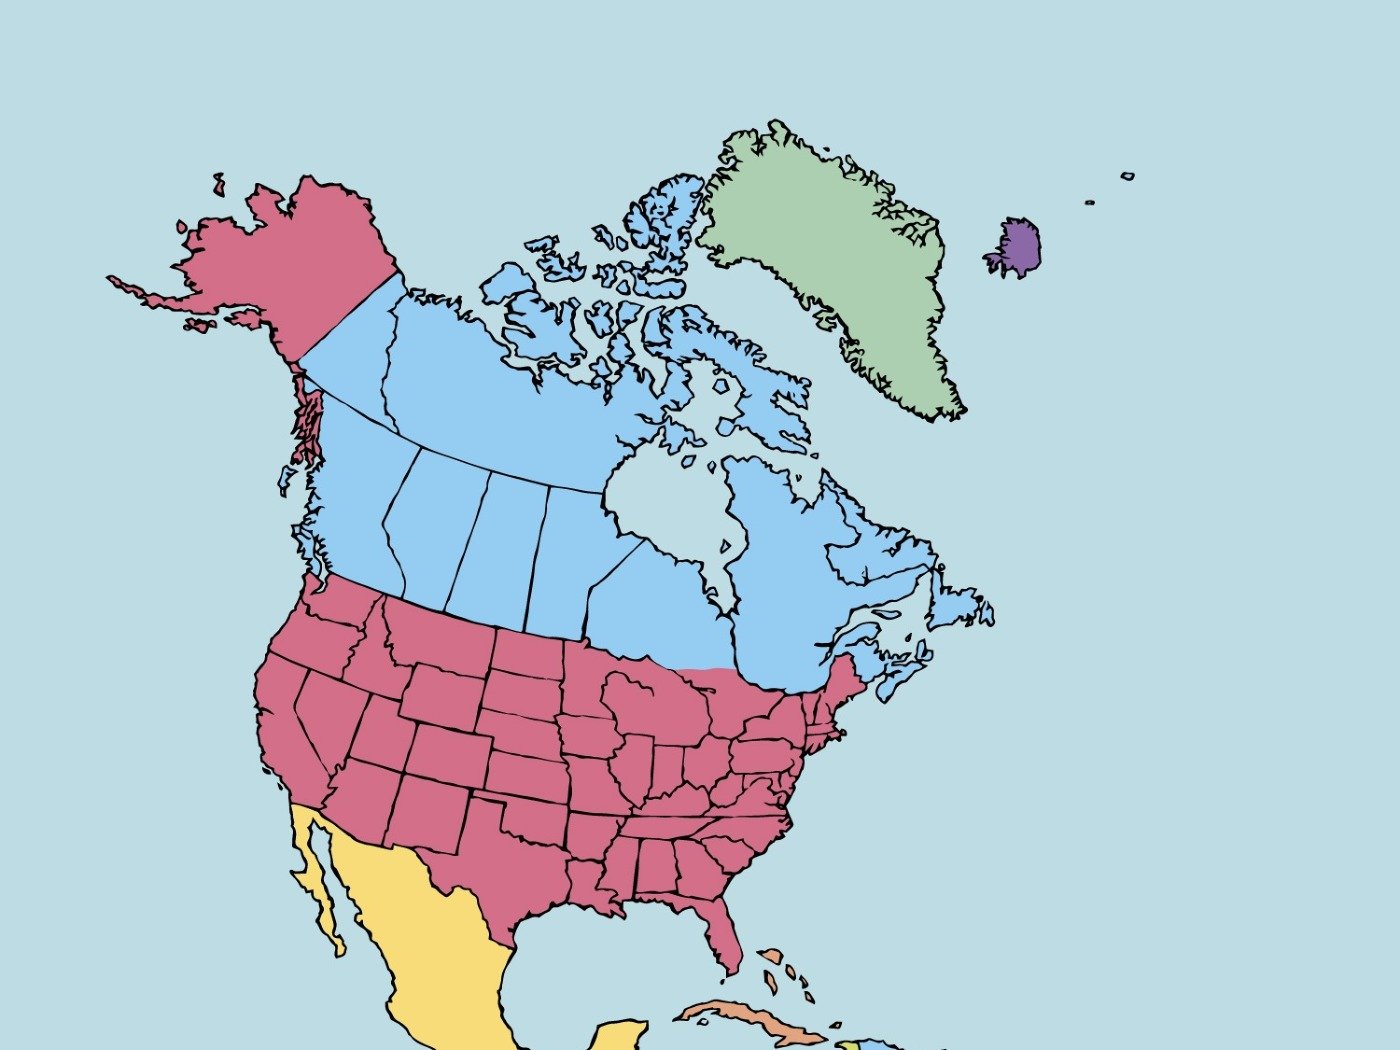 Países y capitales de América: listado completo - Enciclopedia Significados